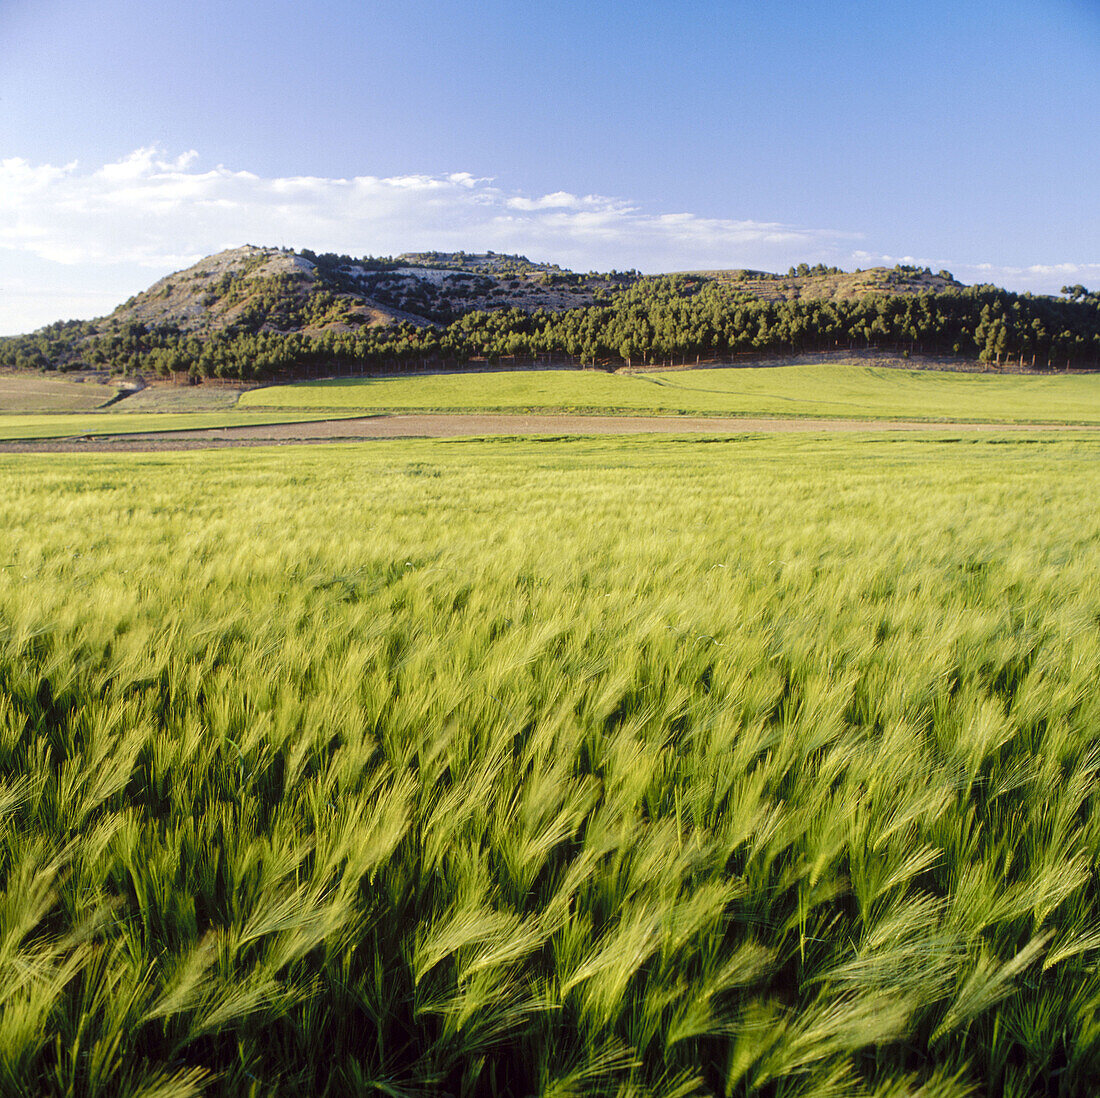 Wheat field, Valbuena de Duero. Valladolid province, Castilla-León, Spain